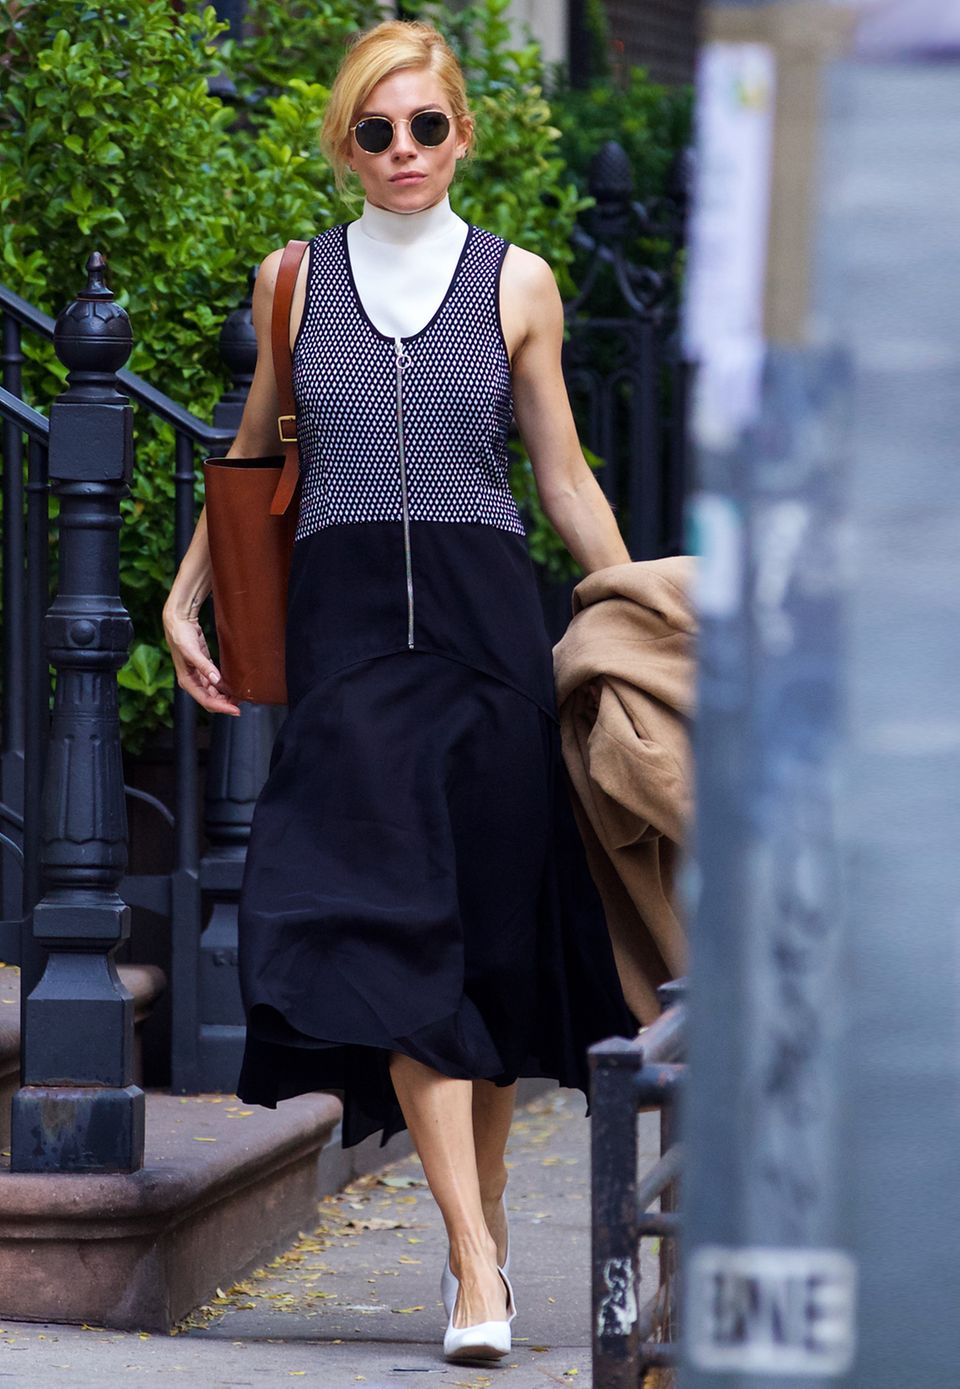 Eine perfekte Mischung aus avantgardistisch und klassisch: Sienna Miller hetzt im futuristischen Kleid, mit Ray-Ban-Sonnenbrille und abgetragenem Ledershopper durch New York.